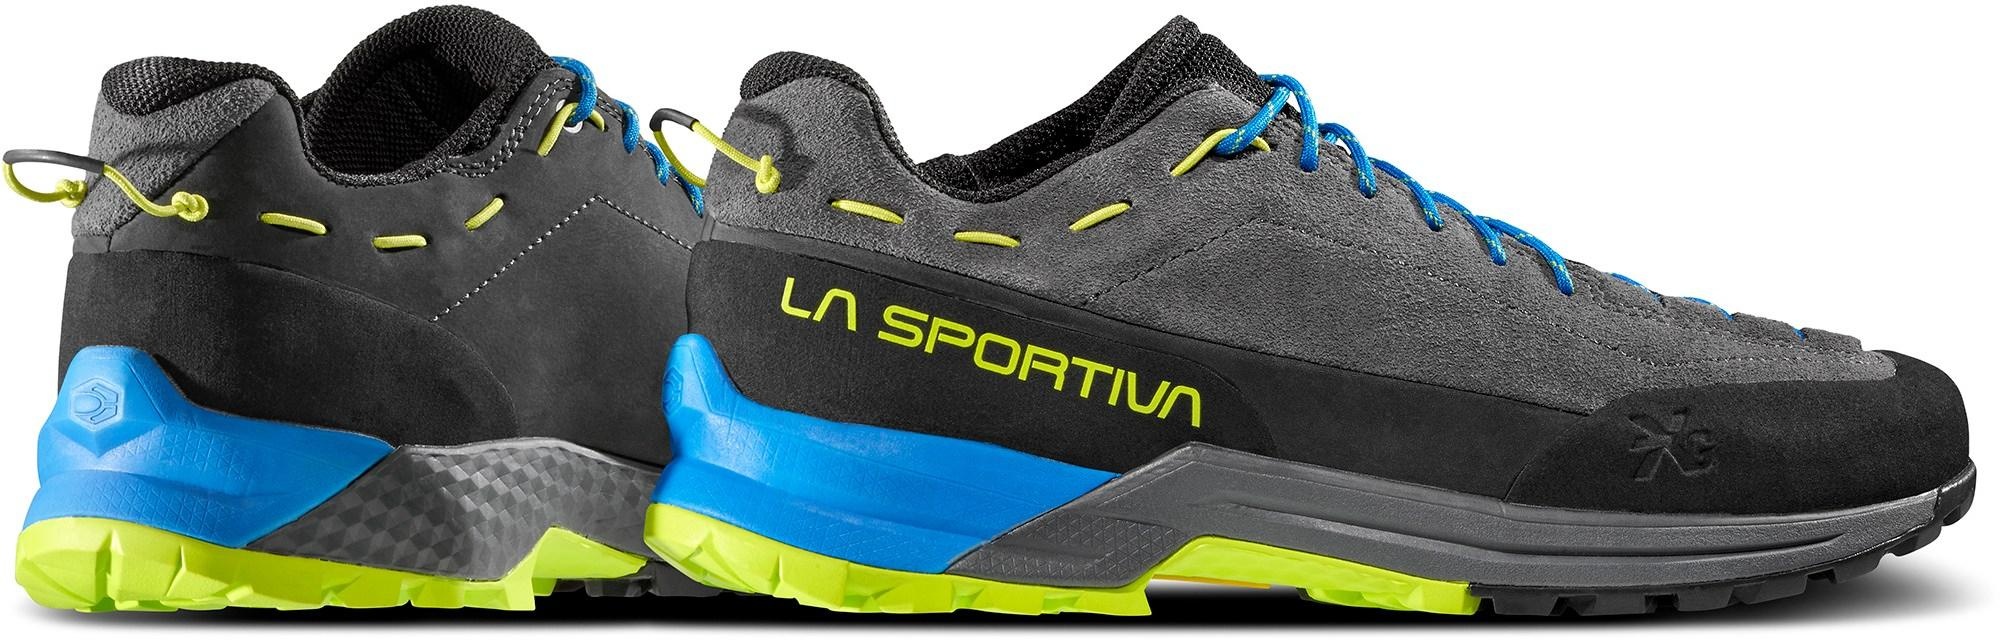 La Sportiva La Sportiva TX Guide Leather Approach Shoe